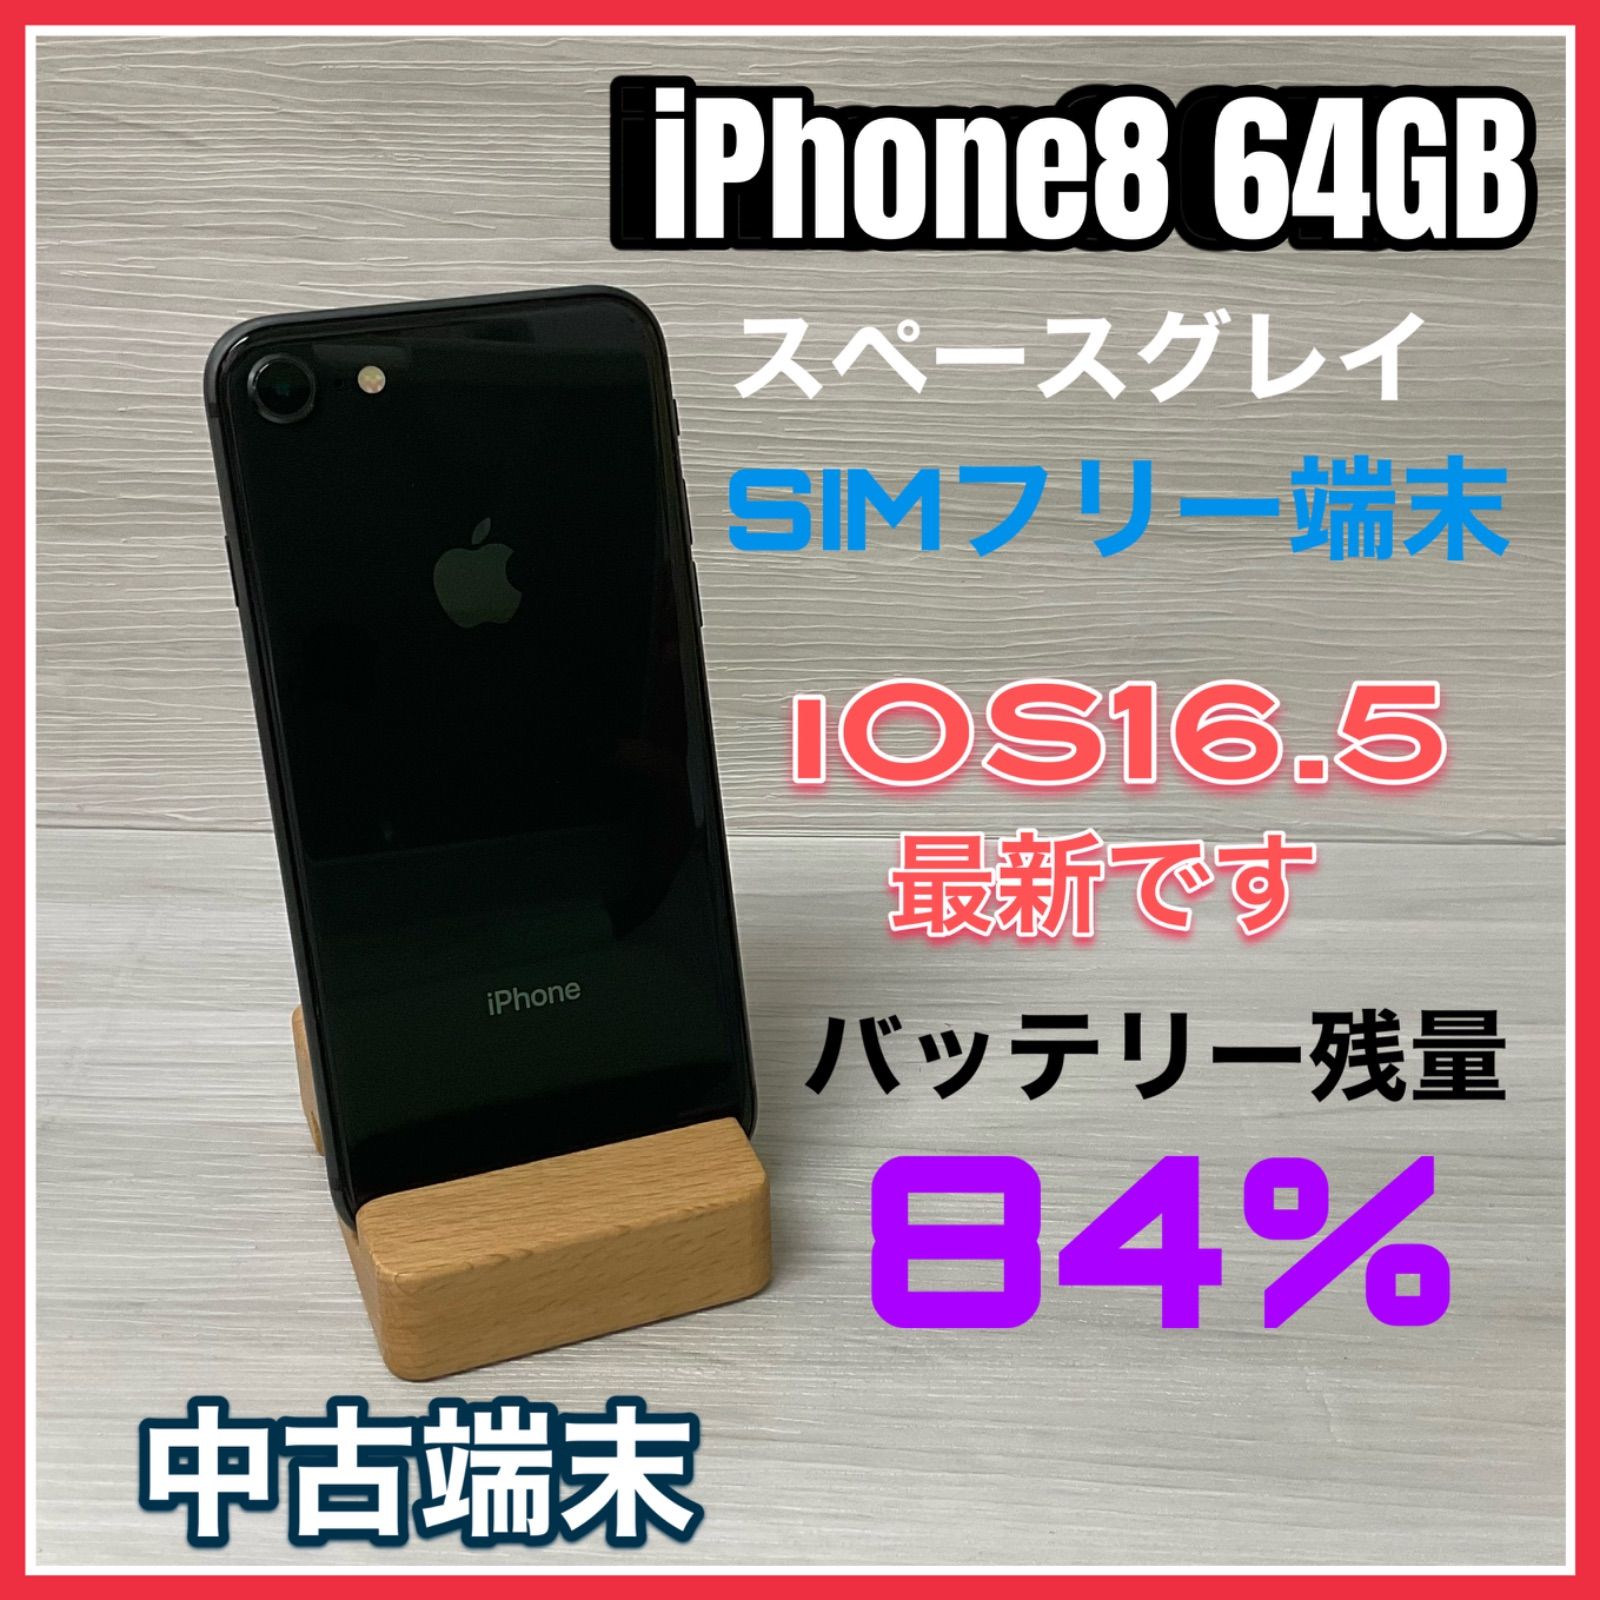 お得在庫 (中古) iPhone 8 64GB スペースグレイ /MQ782J/A 、au：PC